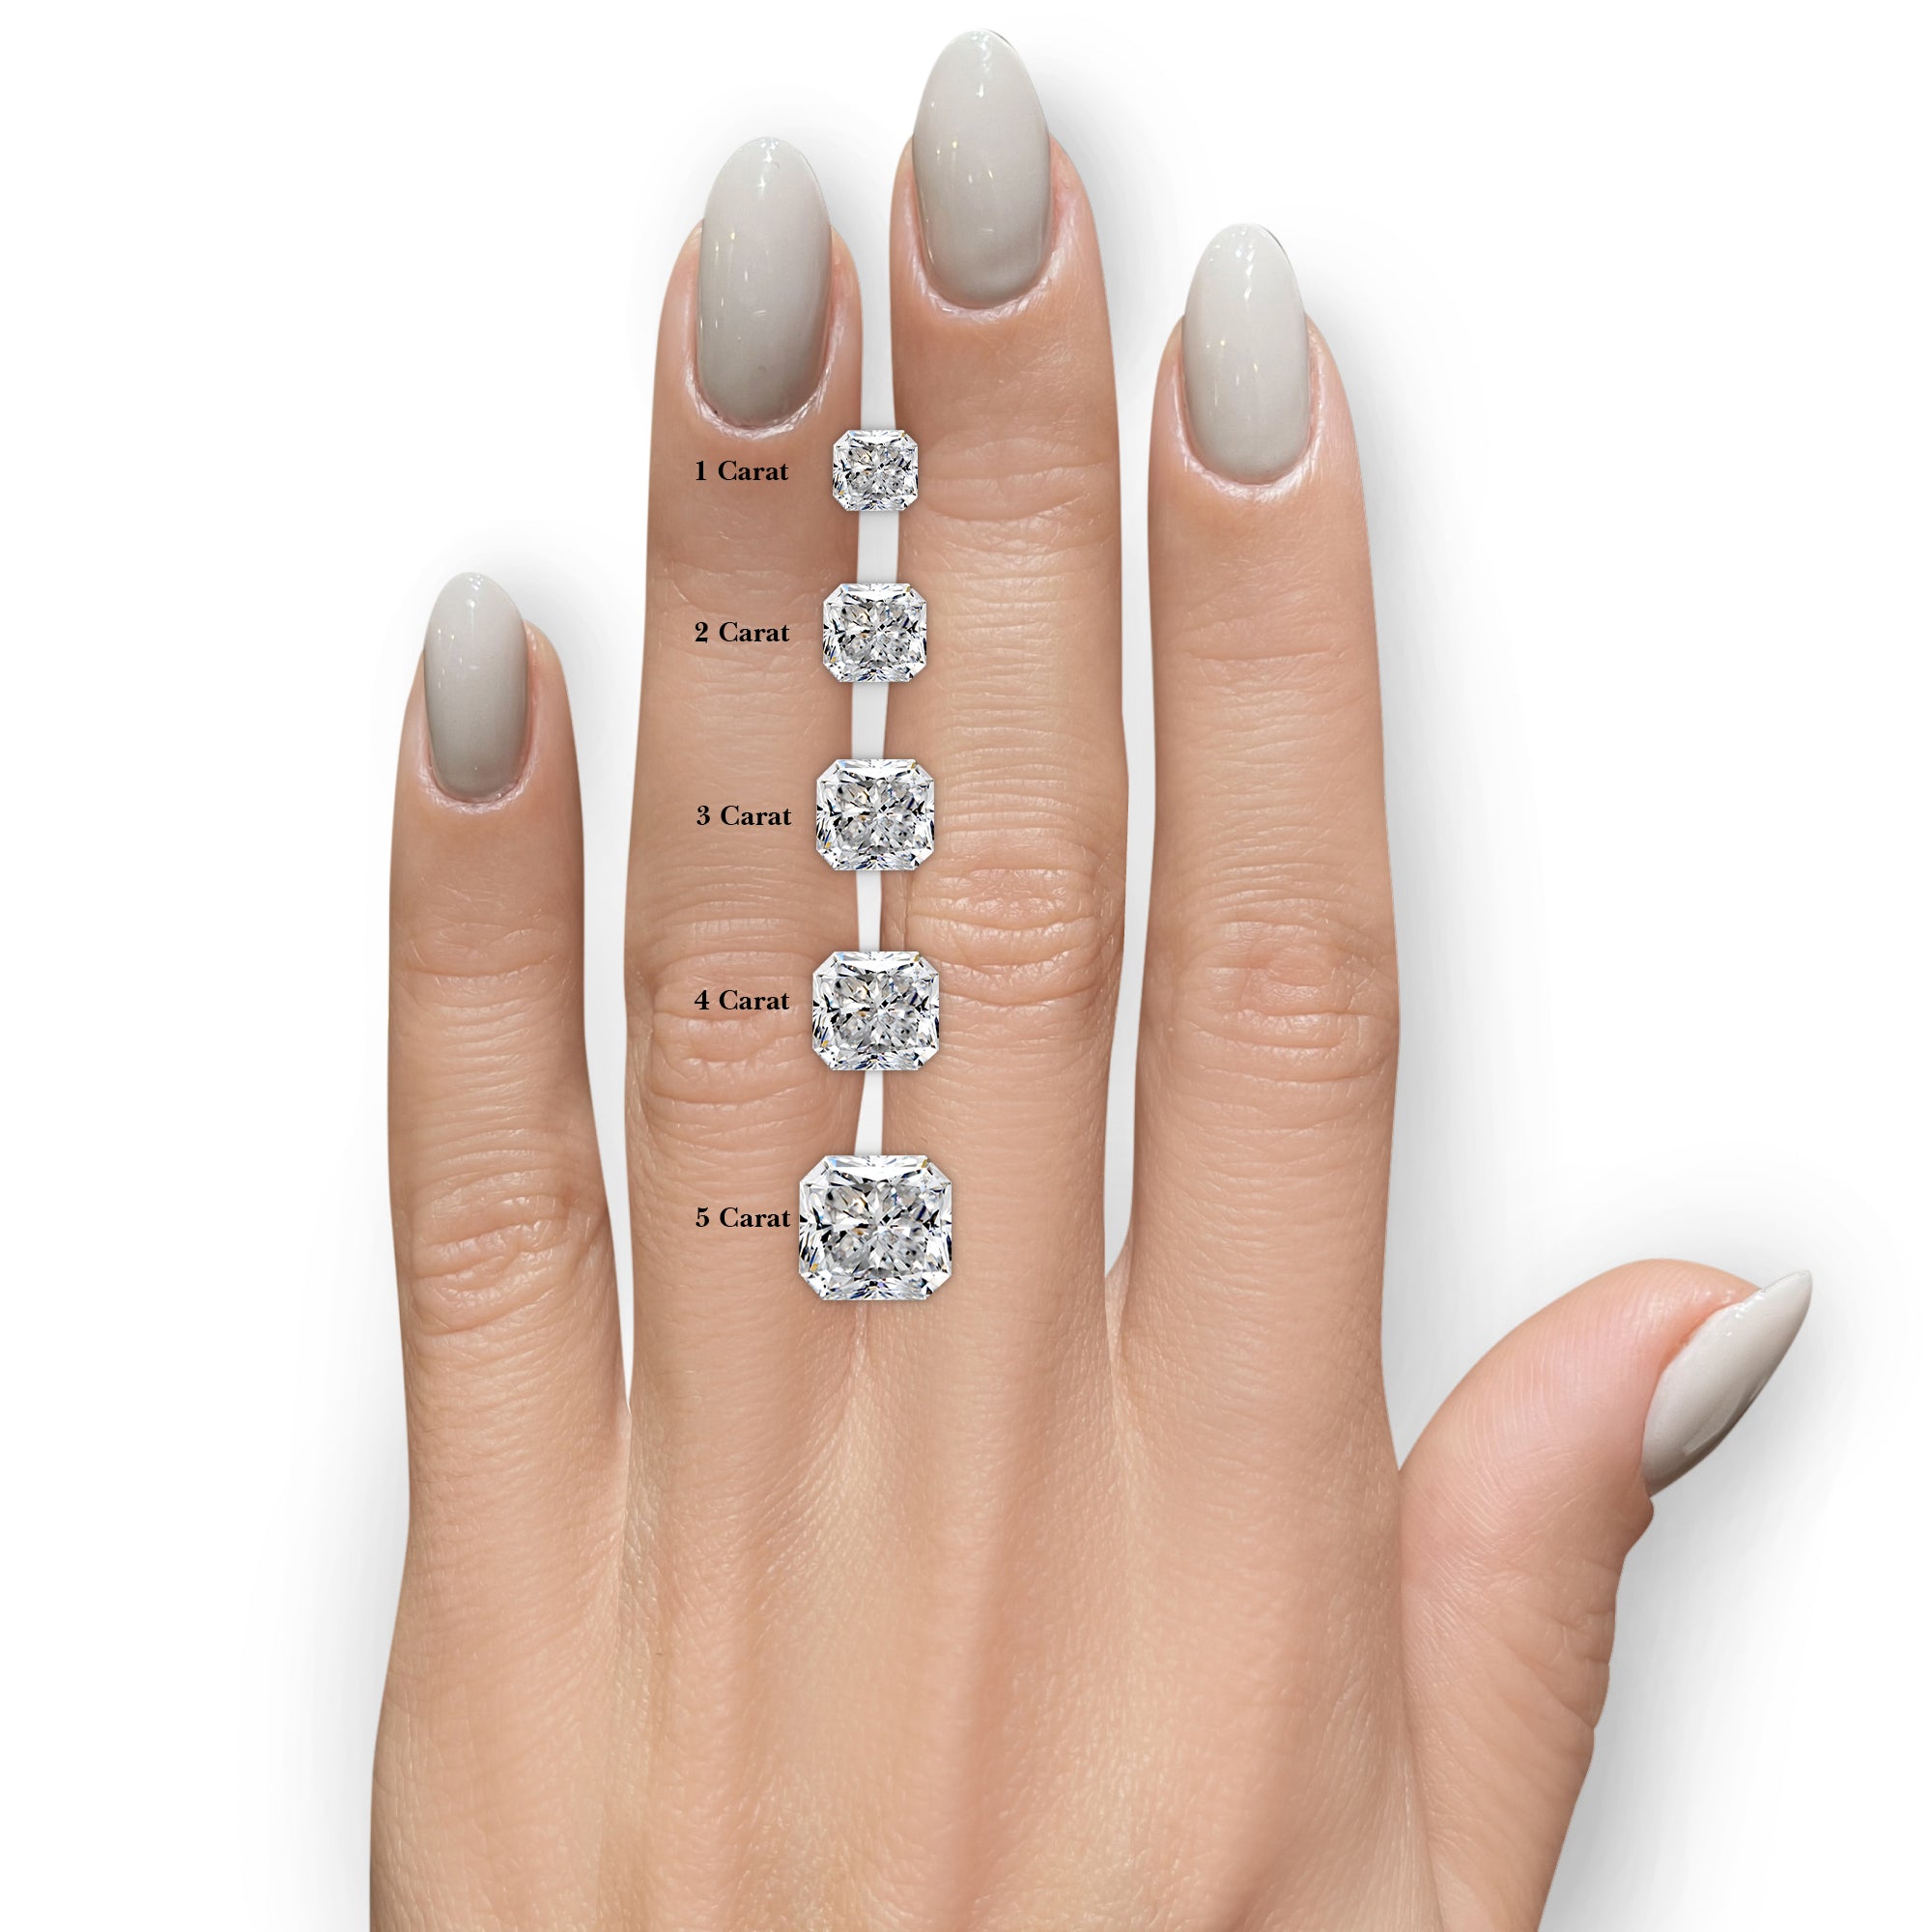 Cora Diamond Engagement Ring -14K Rose Gold